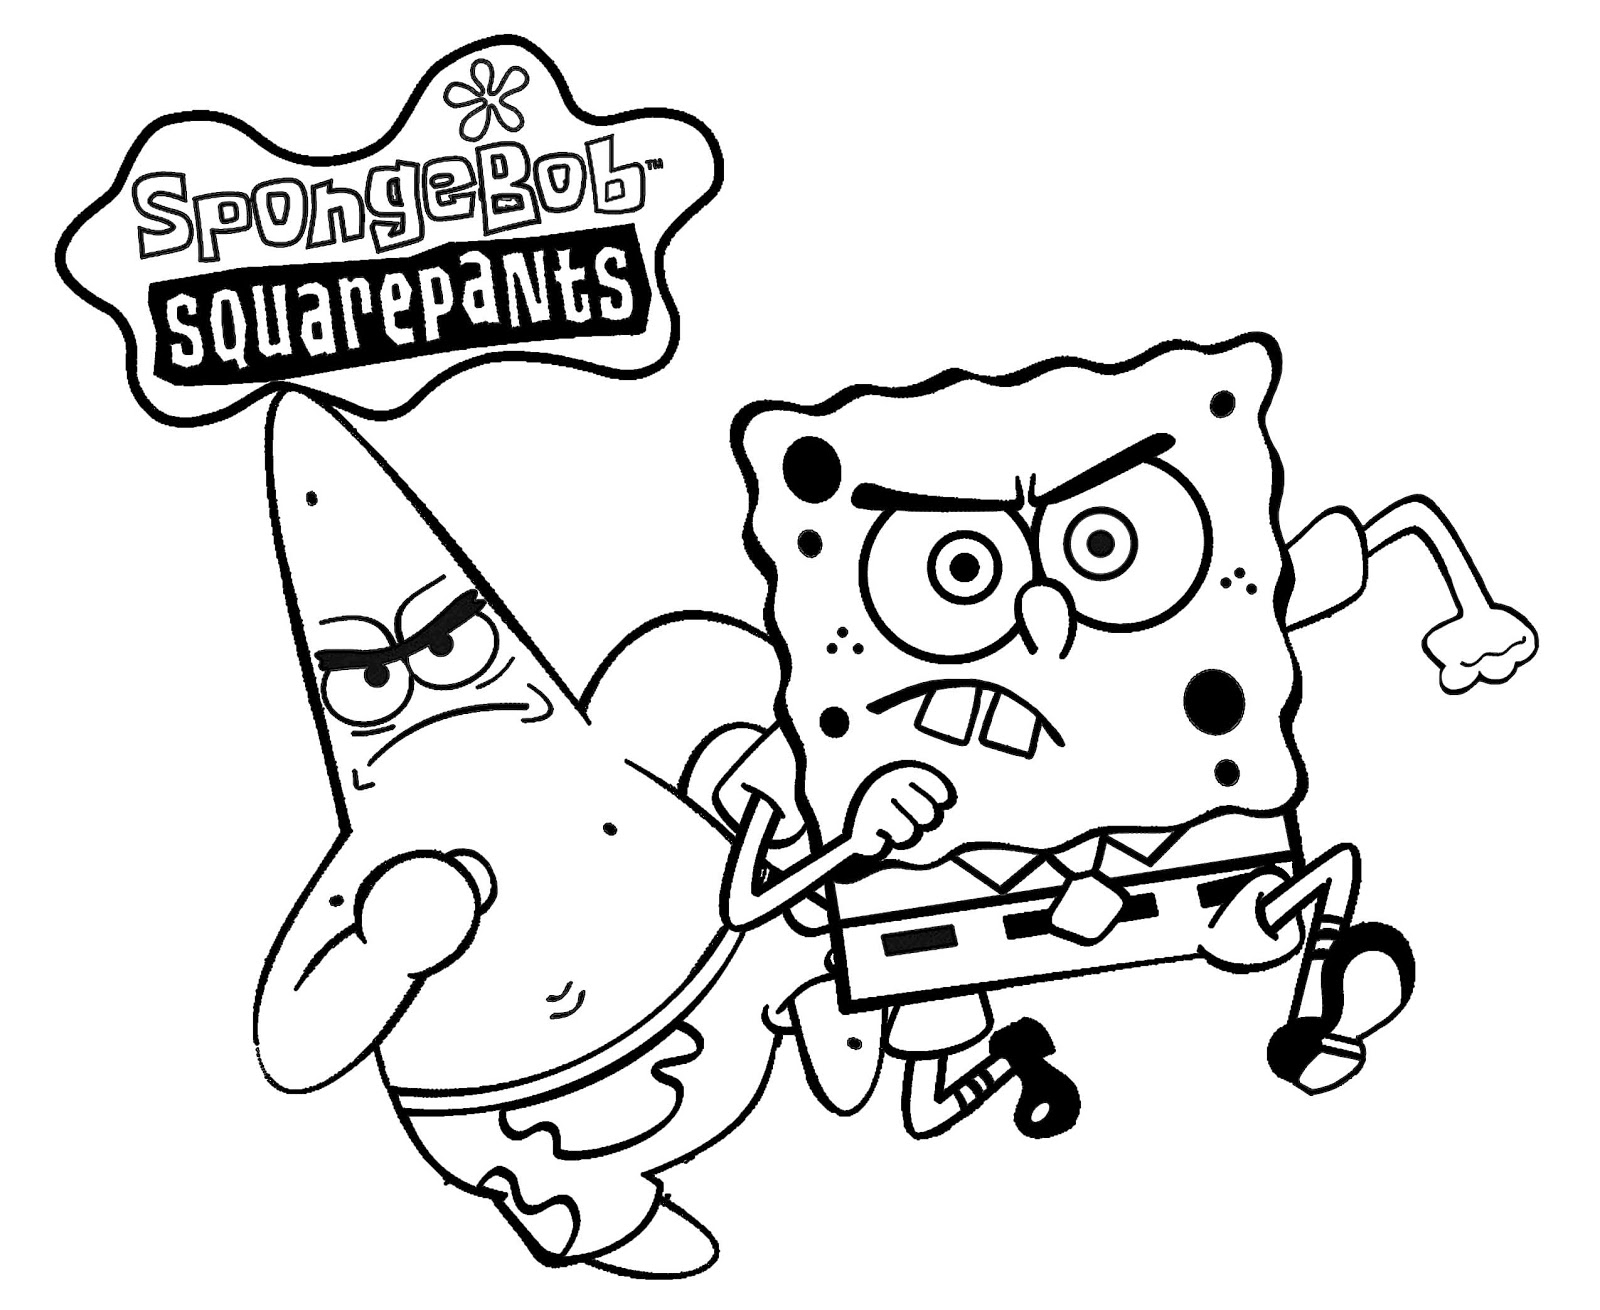 Awal Sejarah Terciptanya Spongebob Squarepants Tausejarah